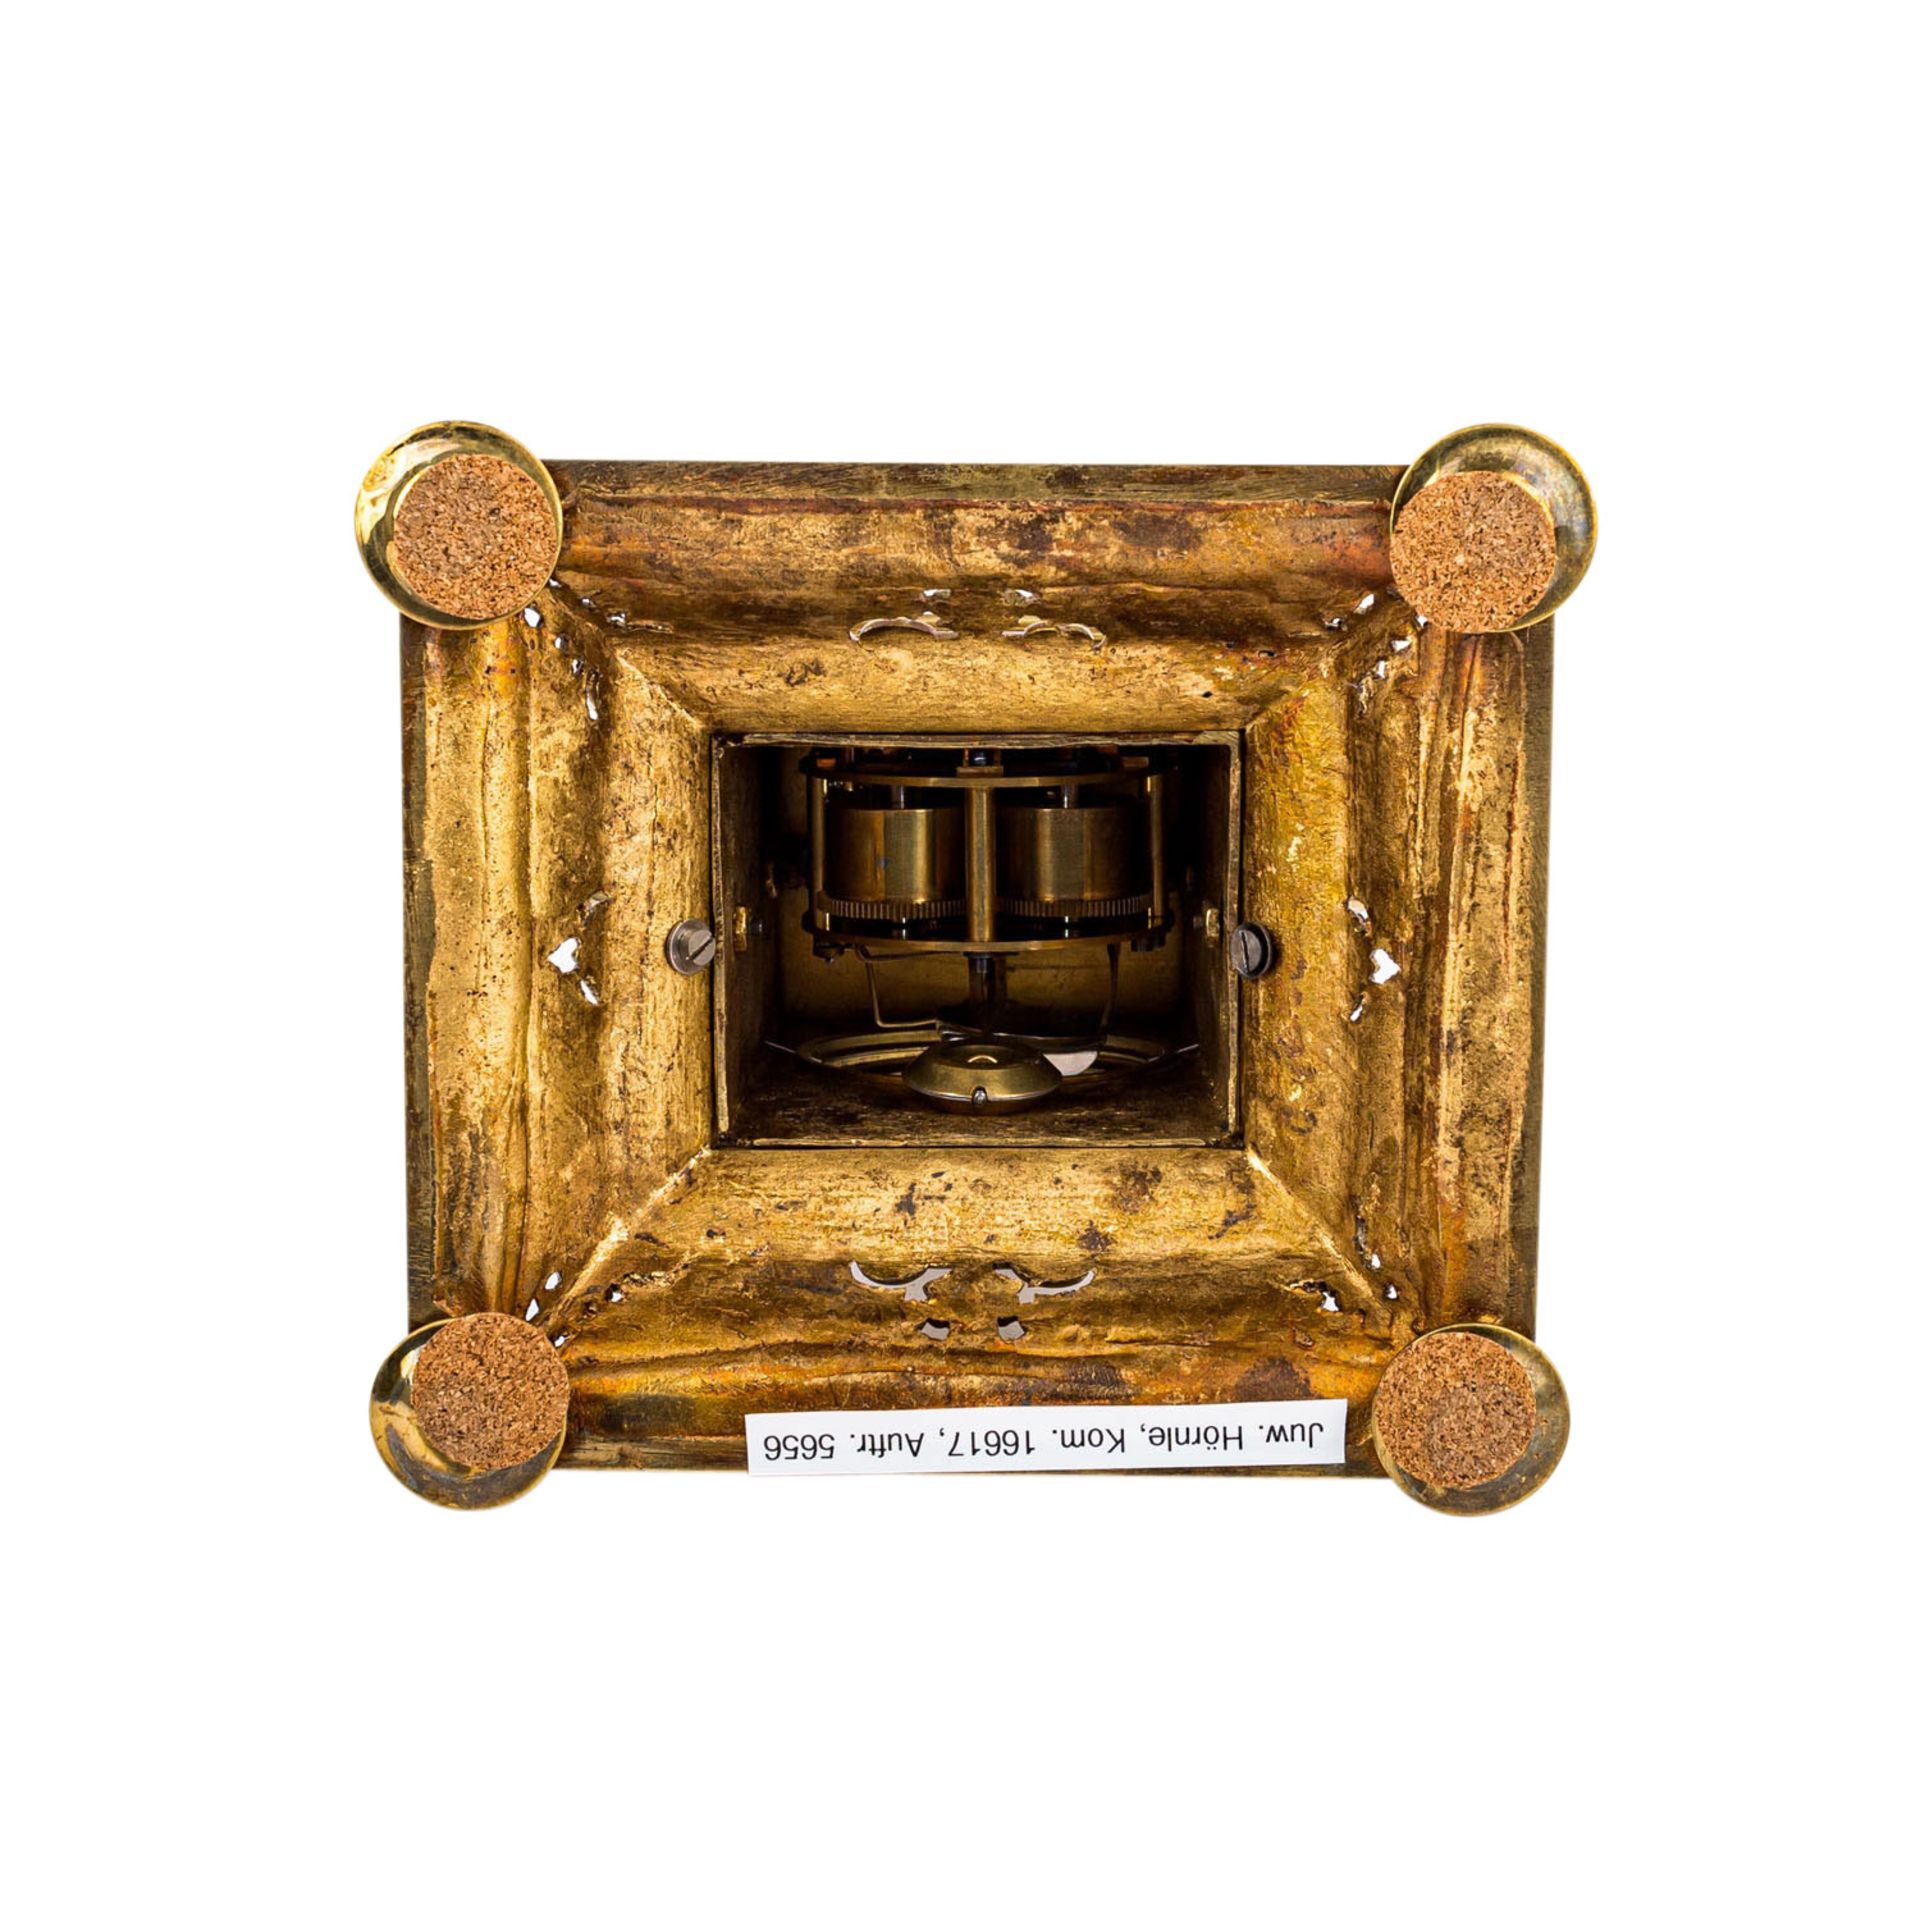 HISTORISMUS Türmchenuhr im Renaissance-Stil2 Hälfte 19. Jh., Messing, Gehäuse mit gerundetem, - Bild 5 aus 5